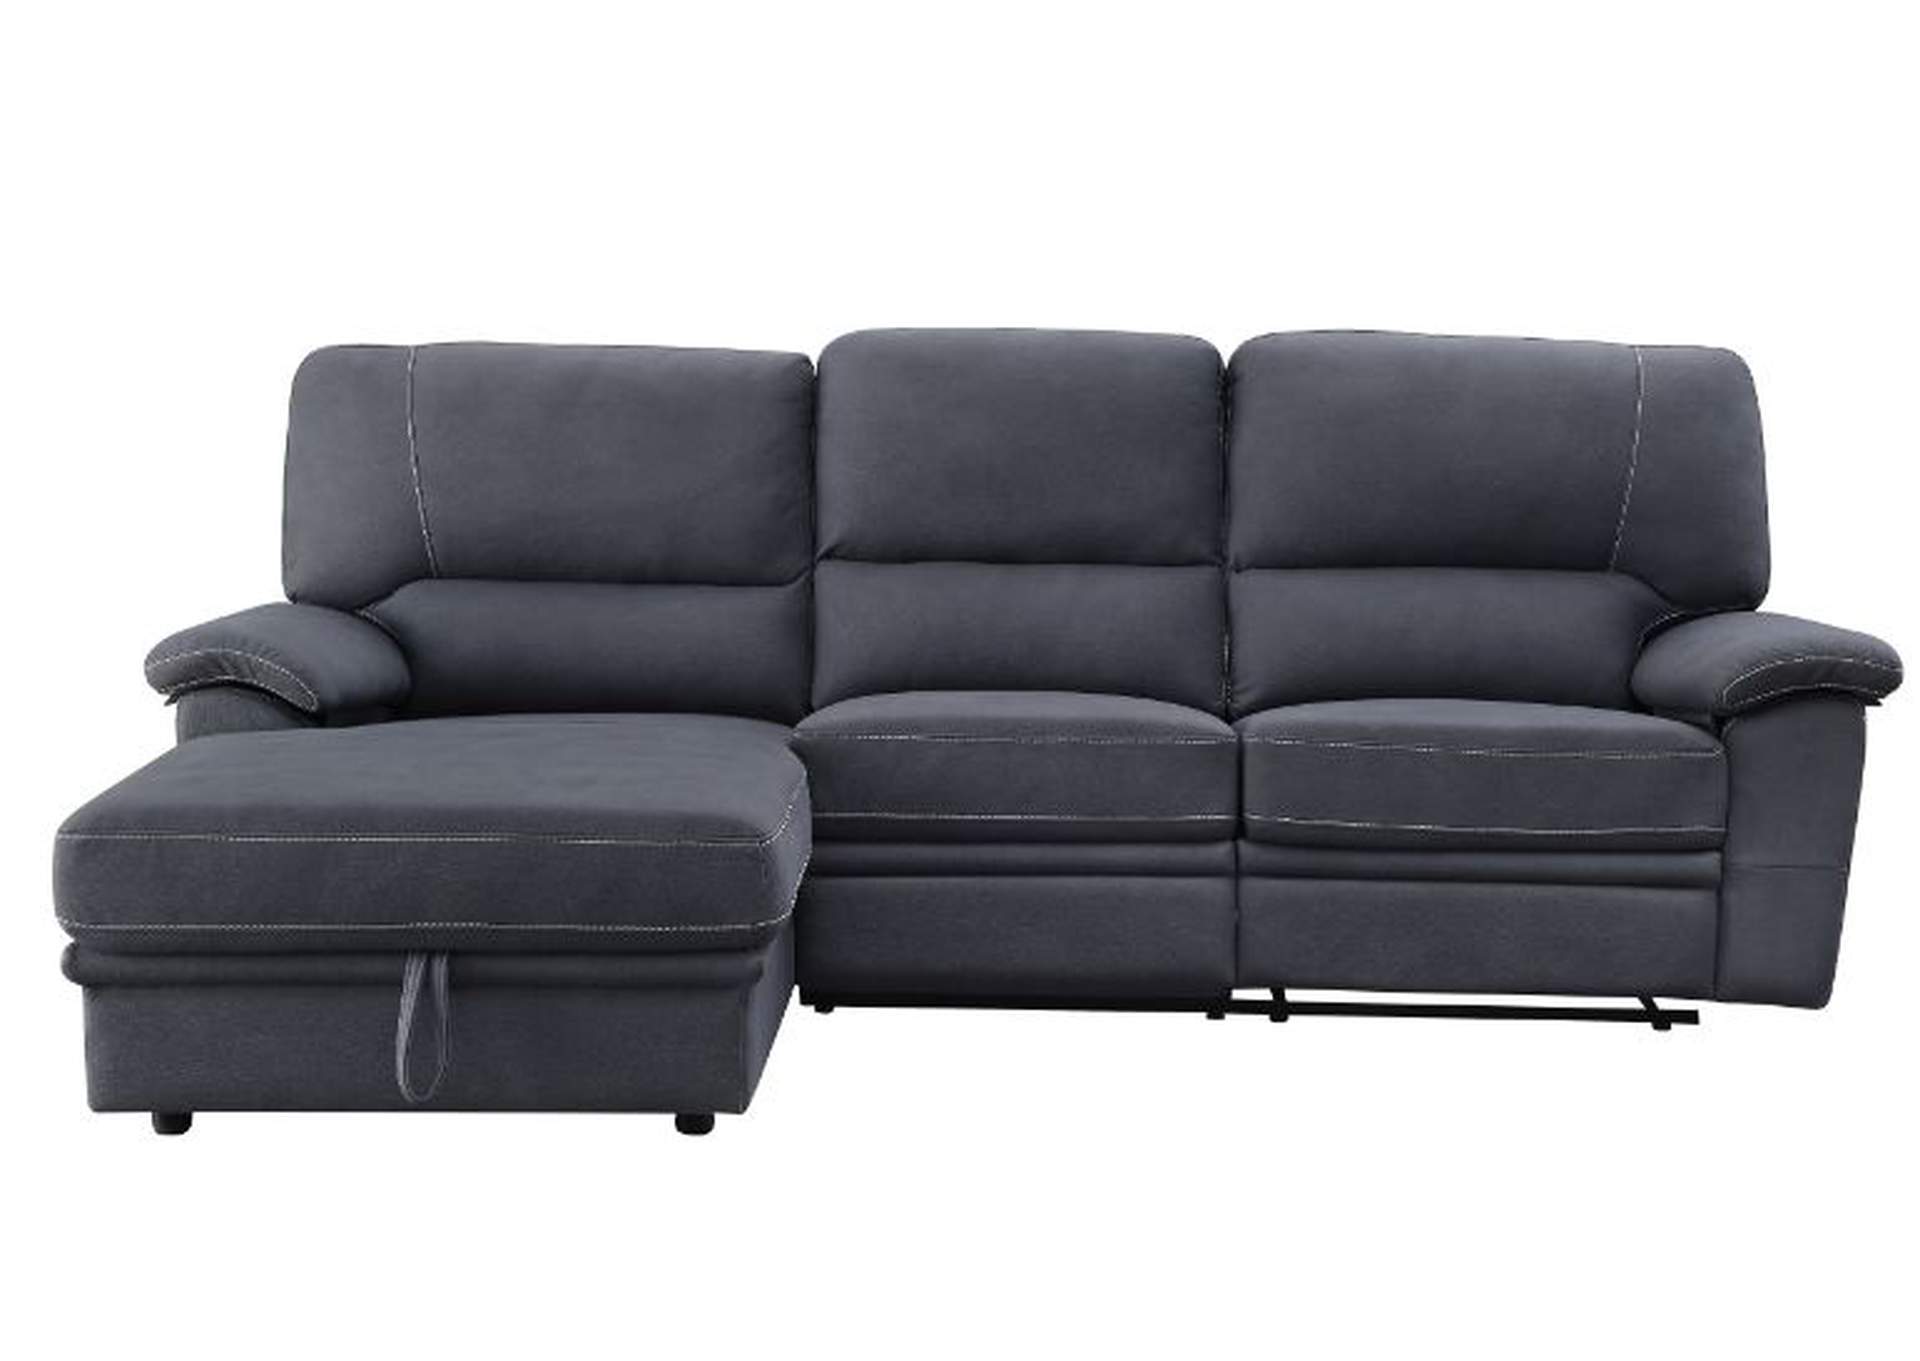 Trifora Sectional Sofa,Acme